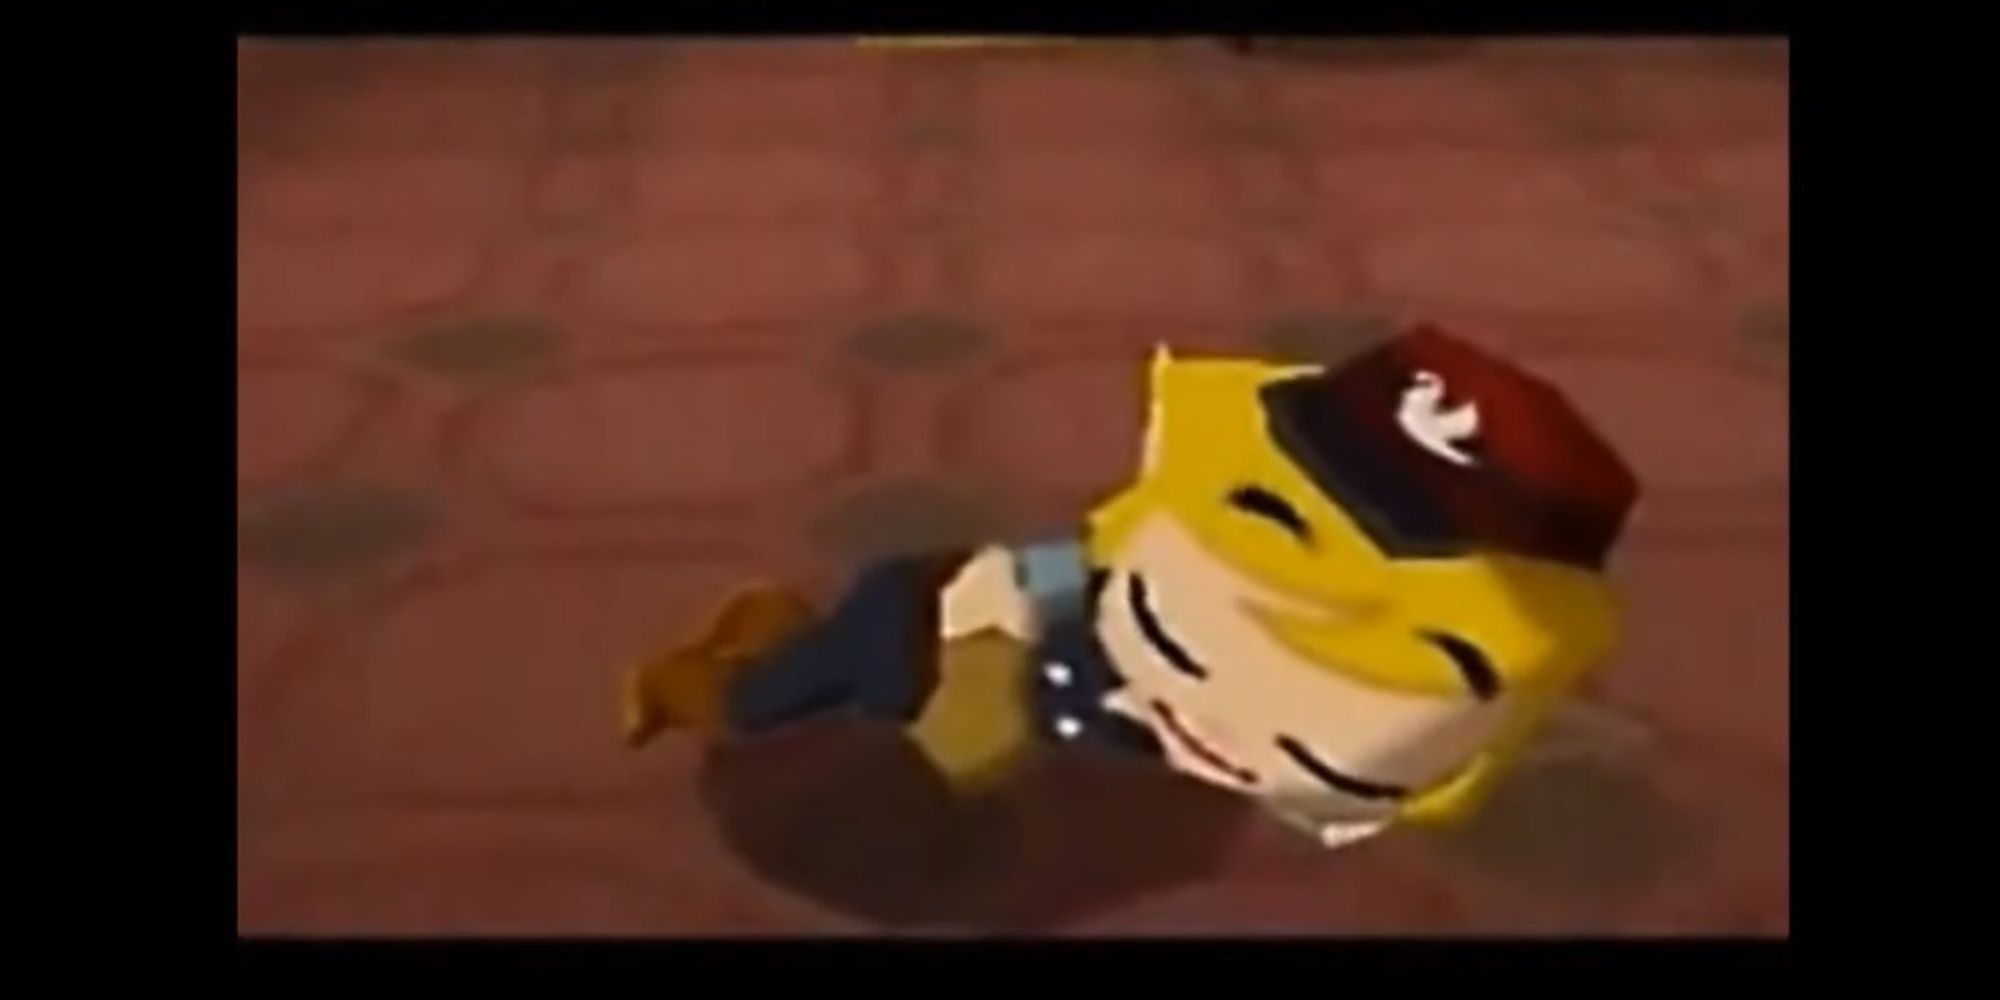 Link schläft in seiner Dirigentenuniform auf dem Boden